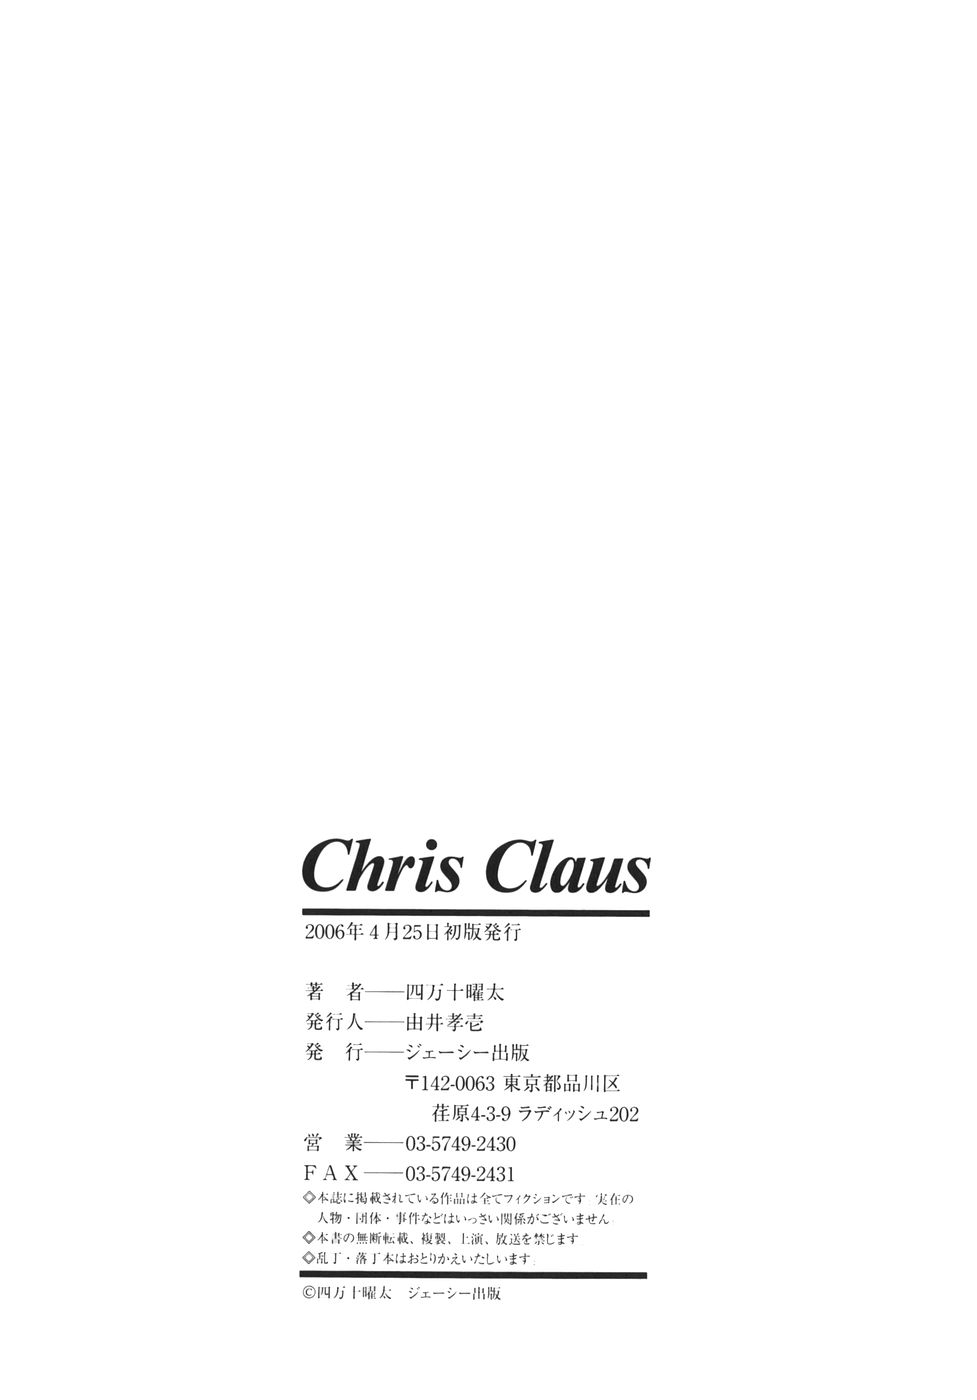 [四万十曜太] クリス・クラウス